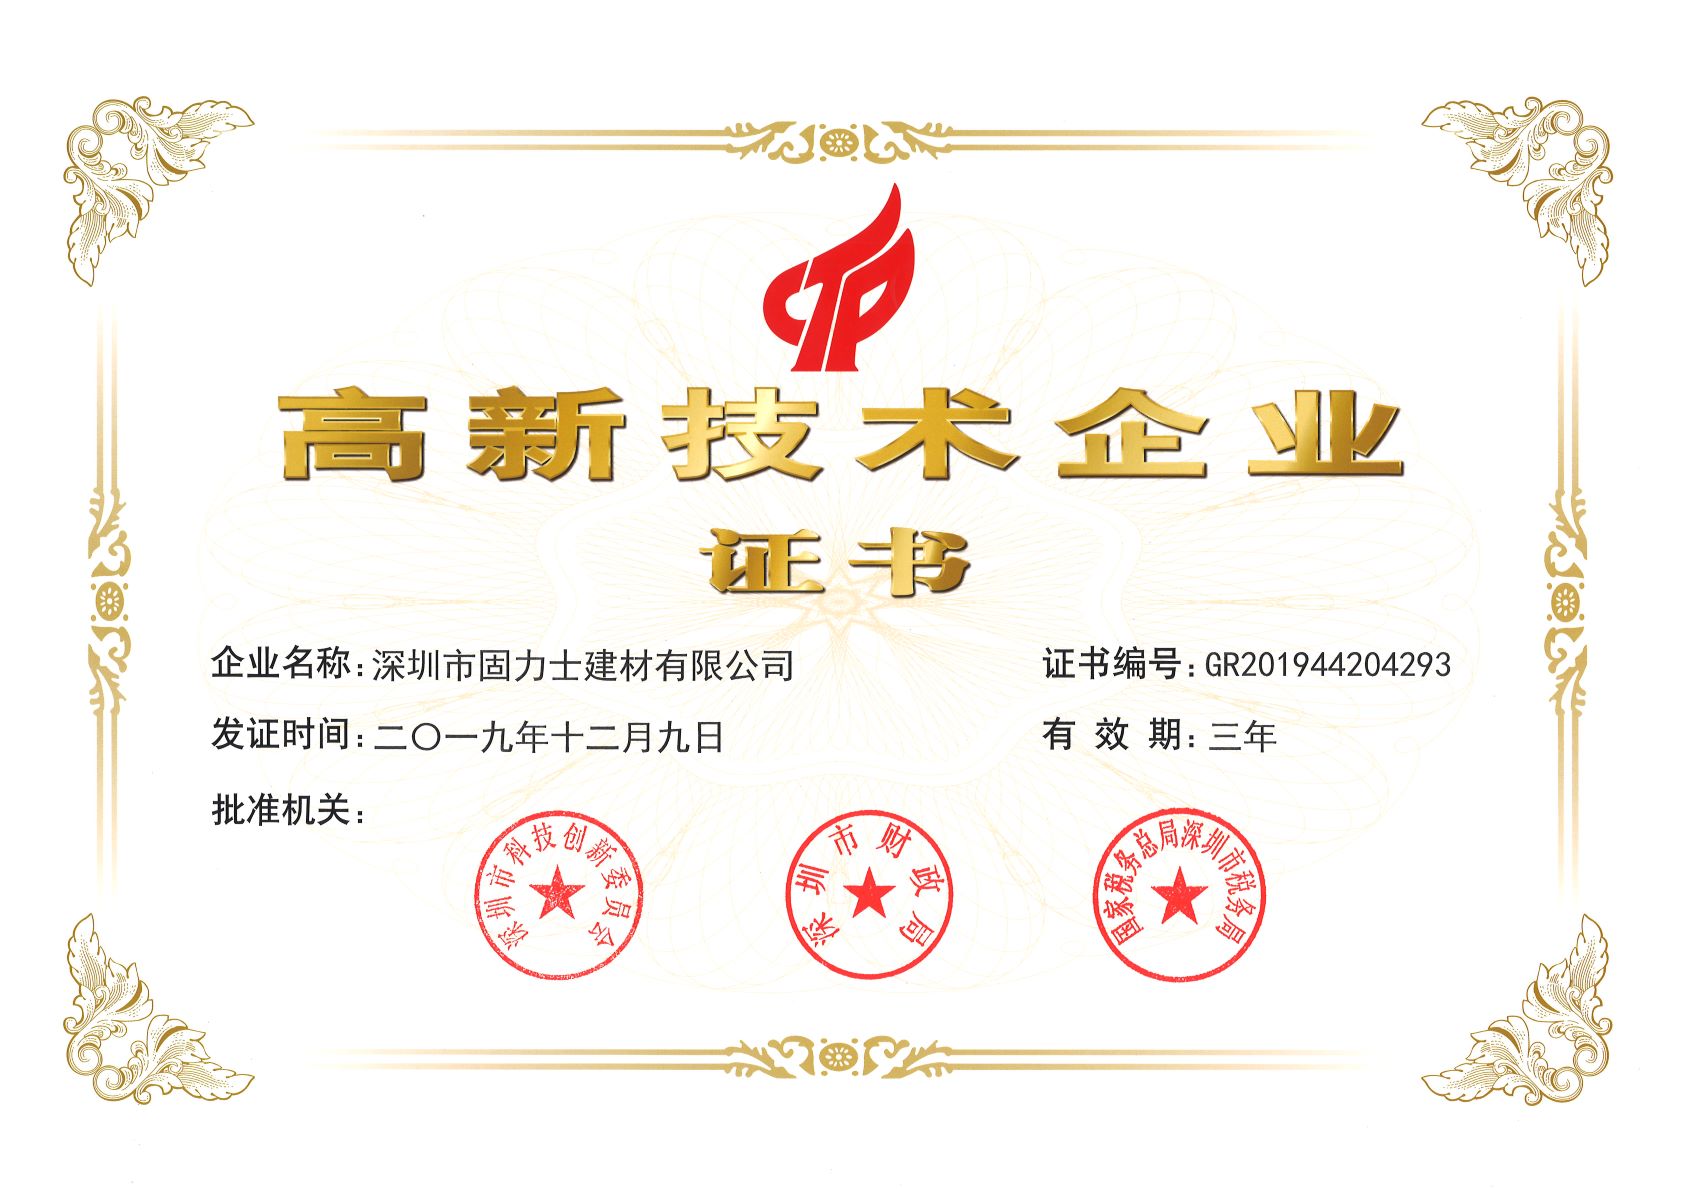 和平热烈祝贺深圳市固力士建材有限公司通过高新技术企业认证